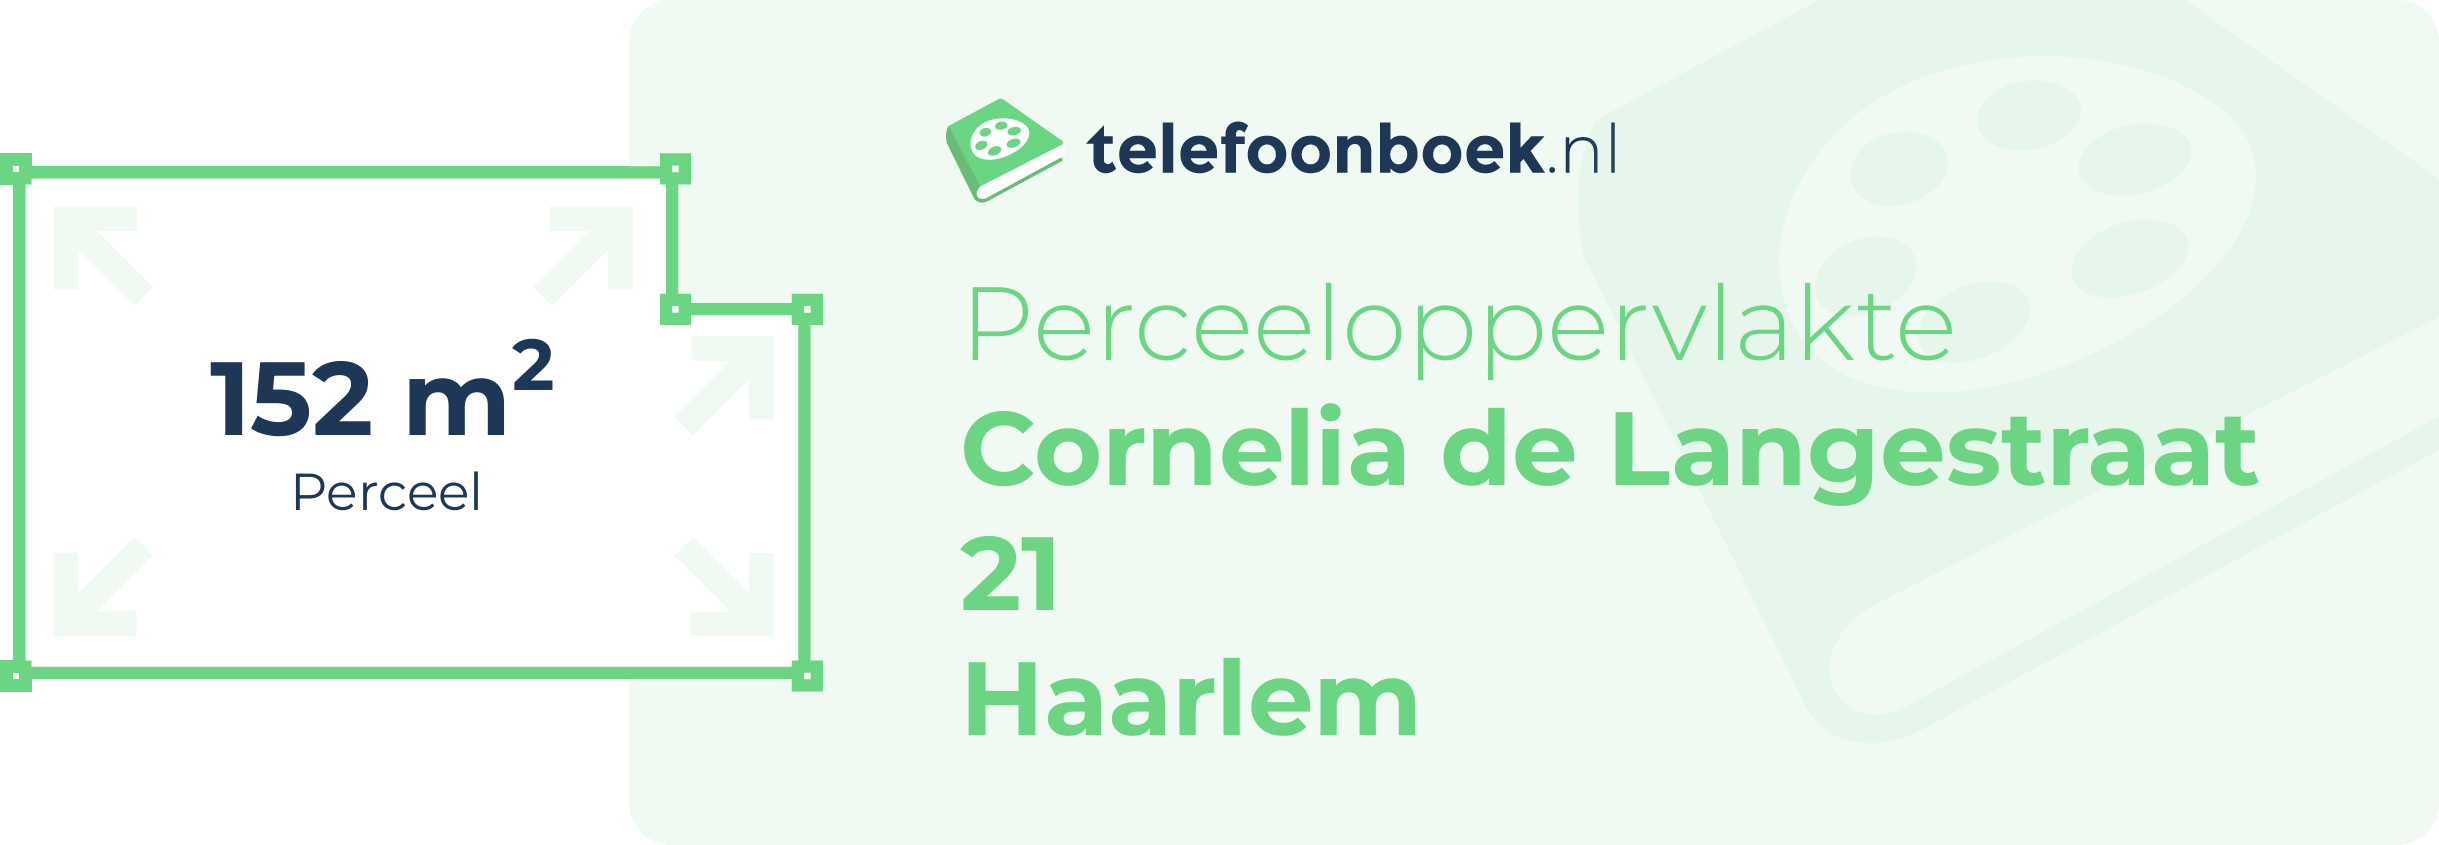 Perceeloppervlakte Cornelia De Langestraat 21 Haarlem